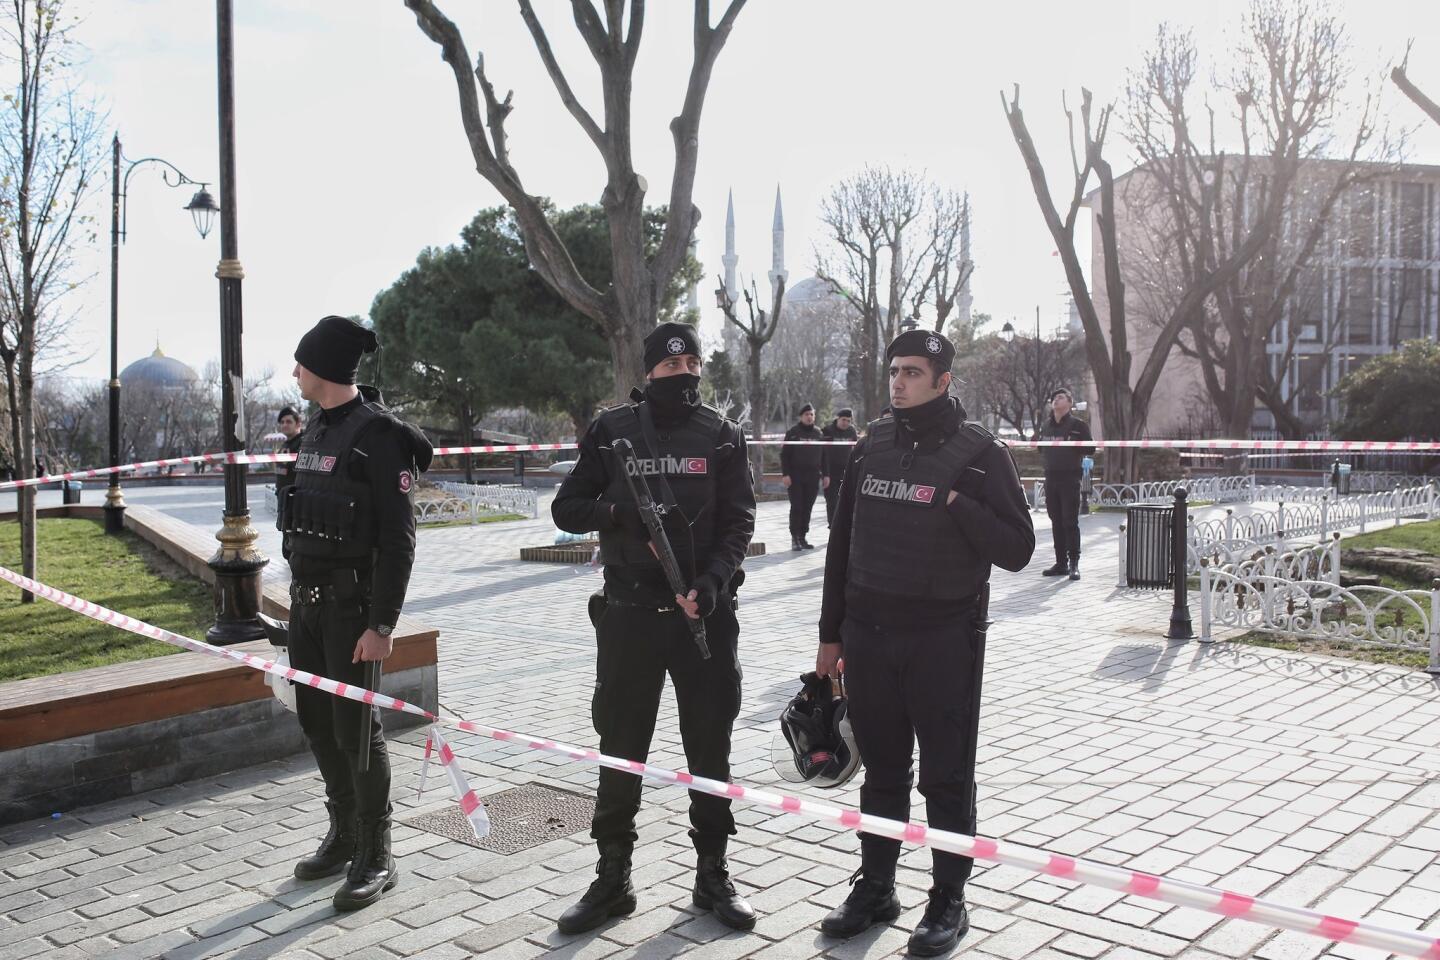 Blast in Turkey kills 10